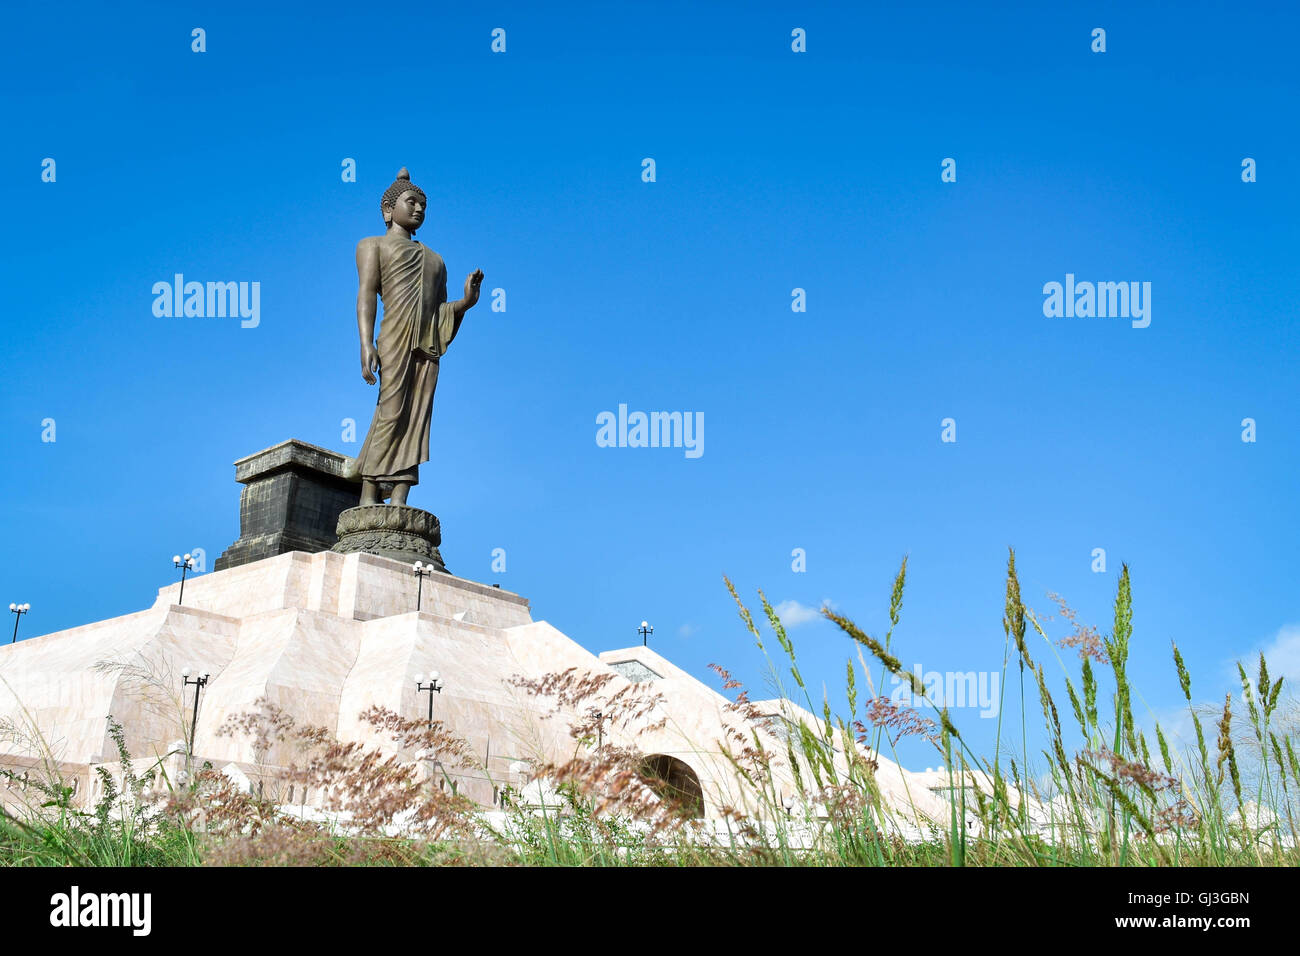 La estatua, la cultura tailandesa, Tailandia, la cultura indígena, close-up Foto de stock